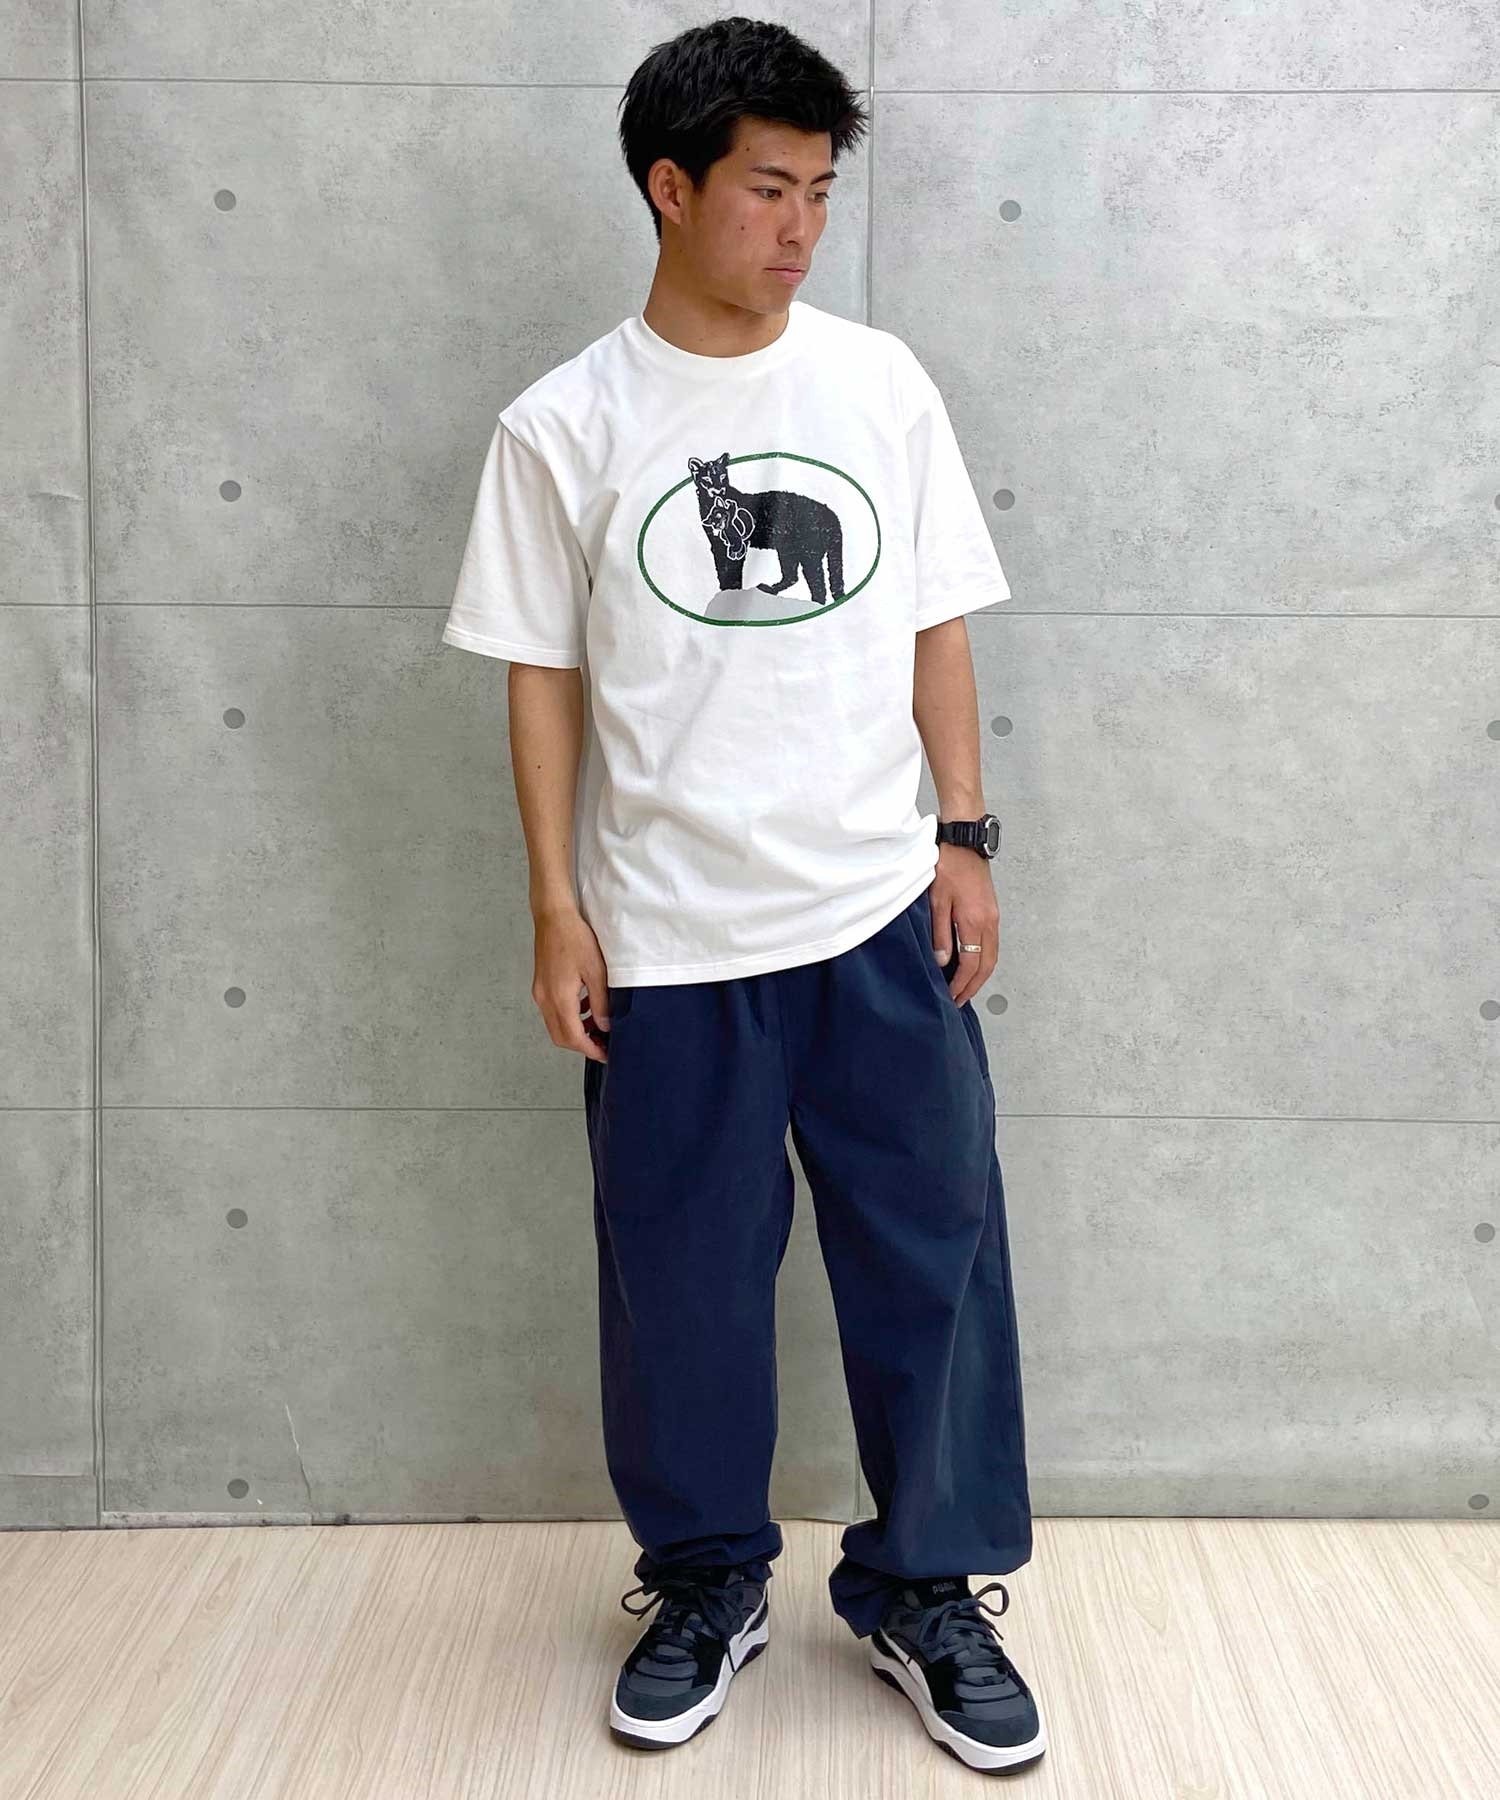 【マトメガイ対象】PUMA プーマ スケートボーディング スケートボード メンズ 半袖 Tシャツ 625696(01-M)